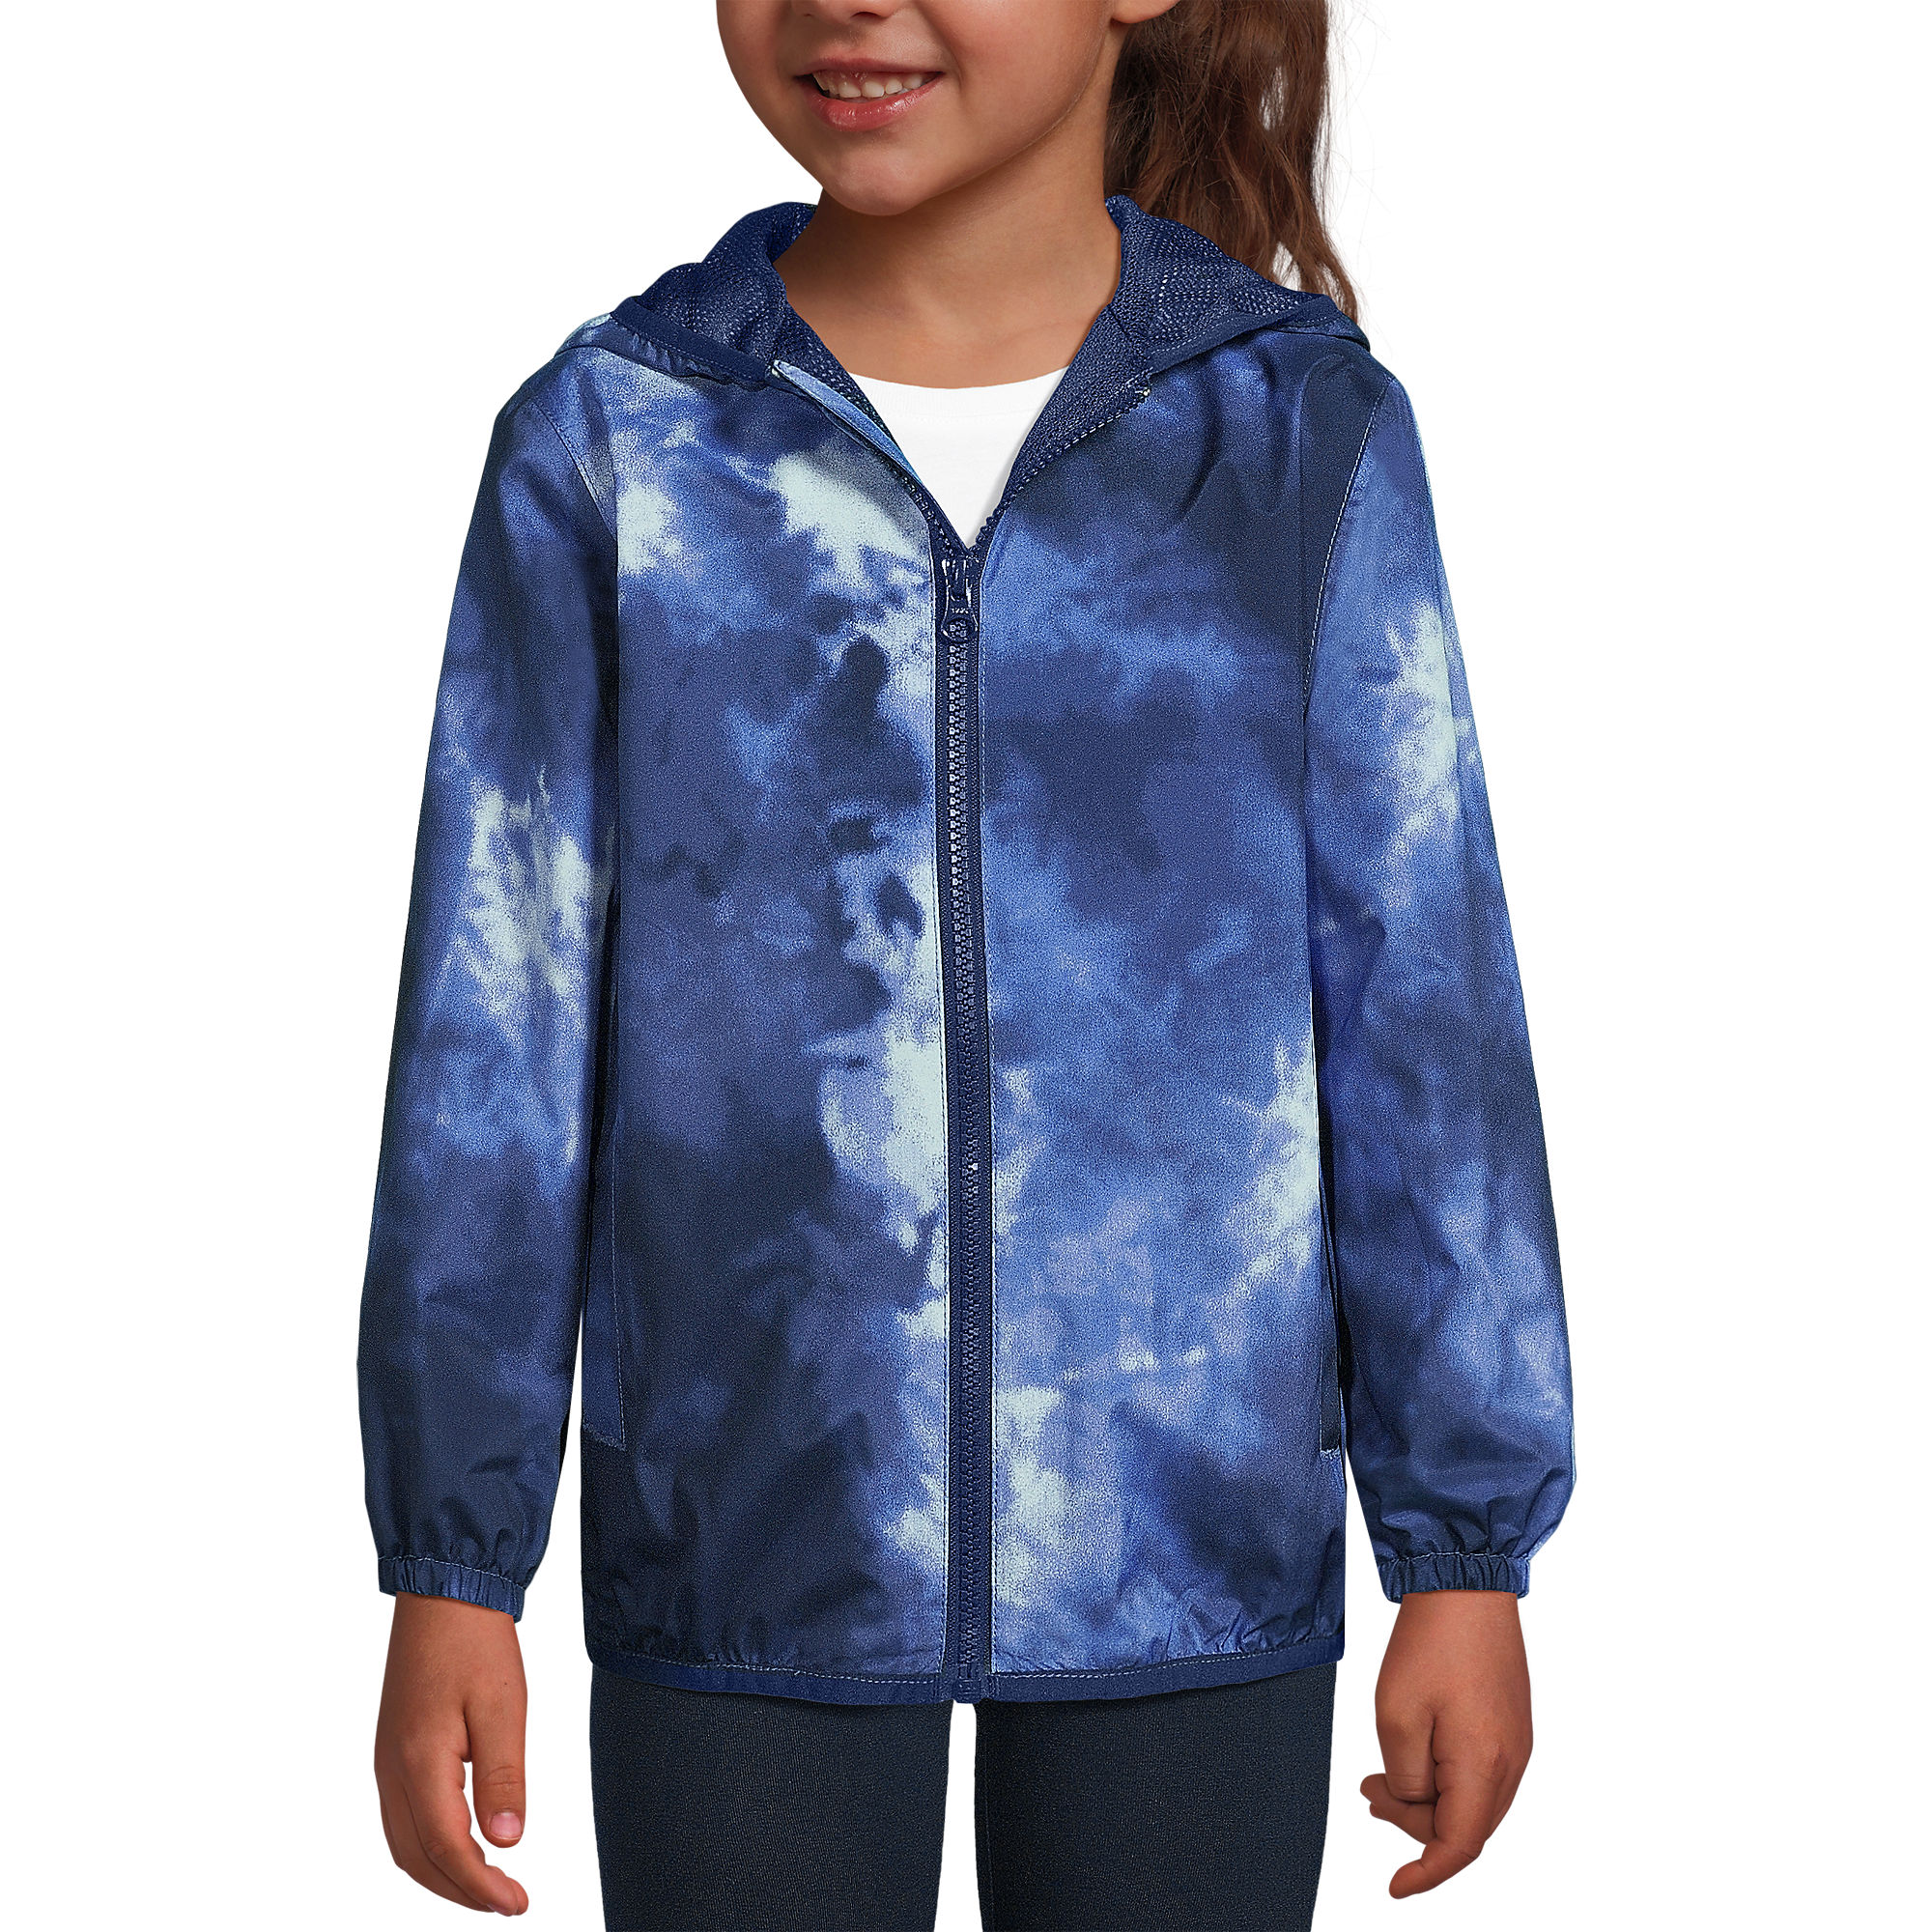 Kids Waterproof Hooded Packable Rain Jacket